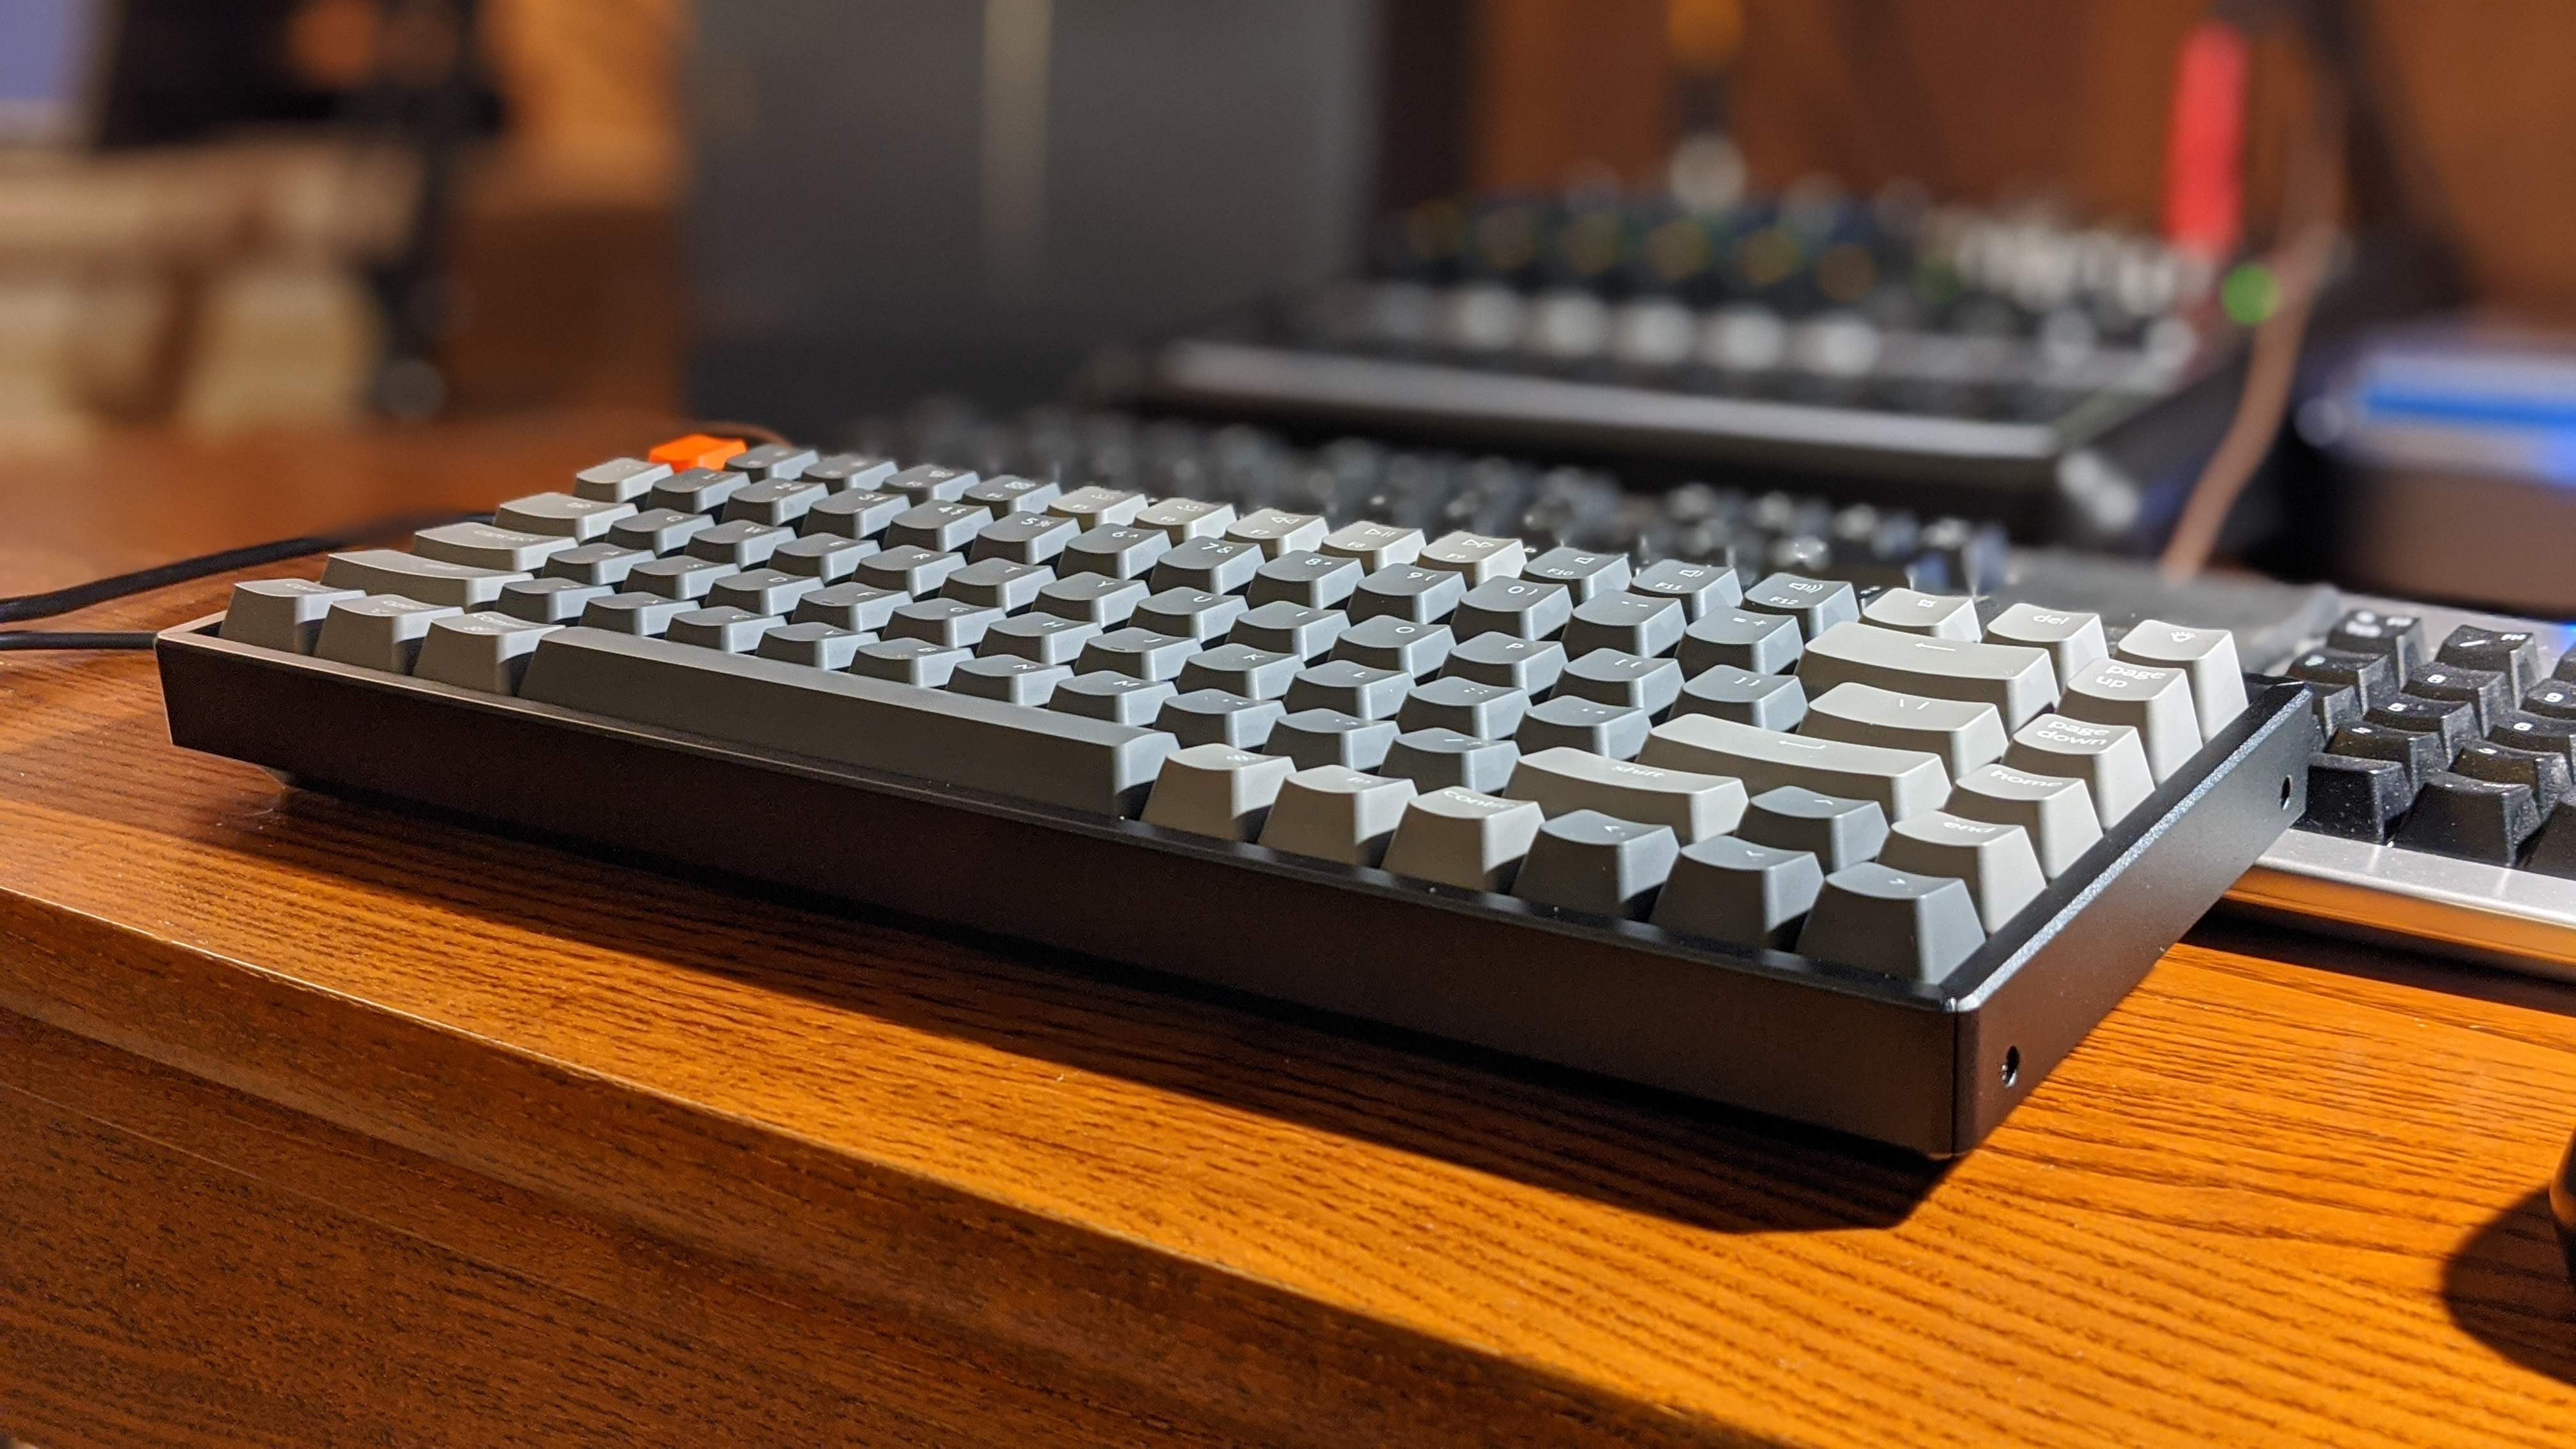 Keychron K2 Keyboard